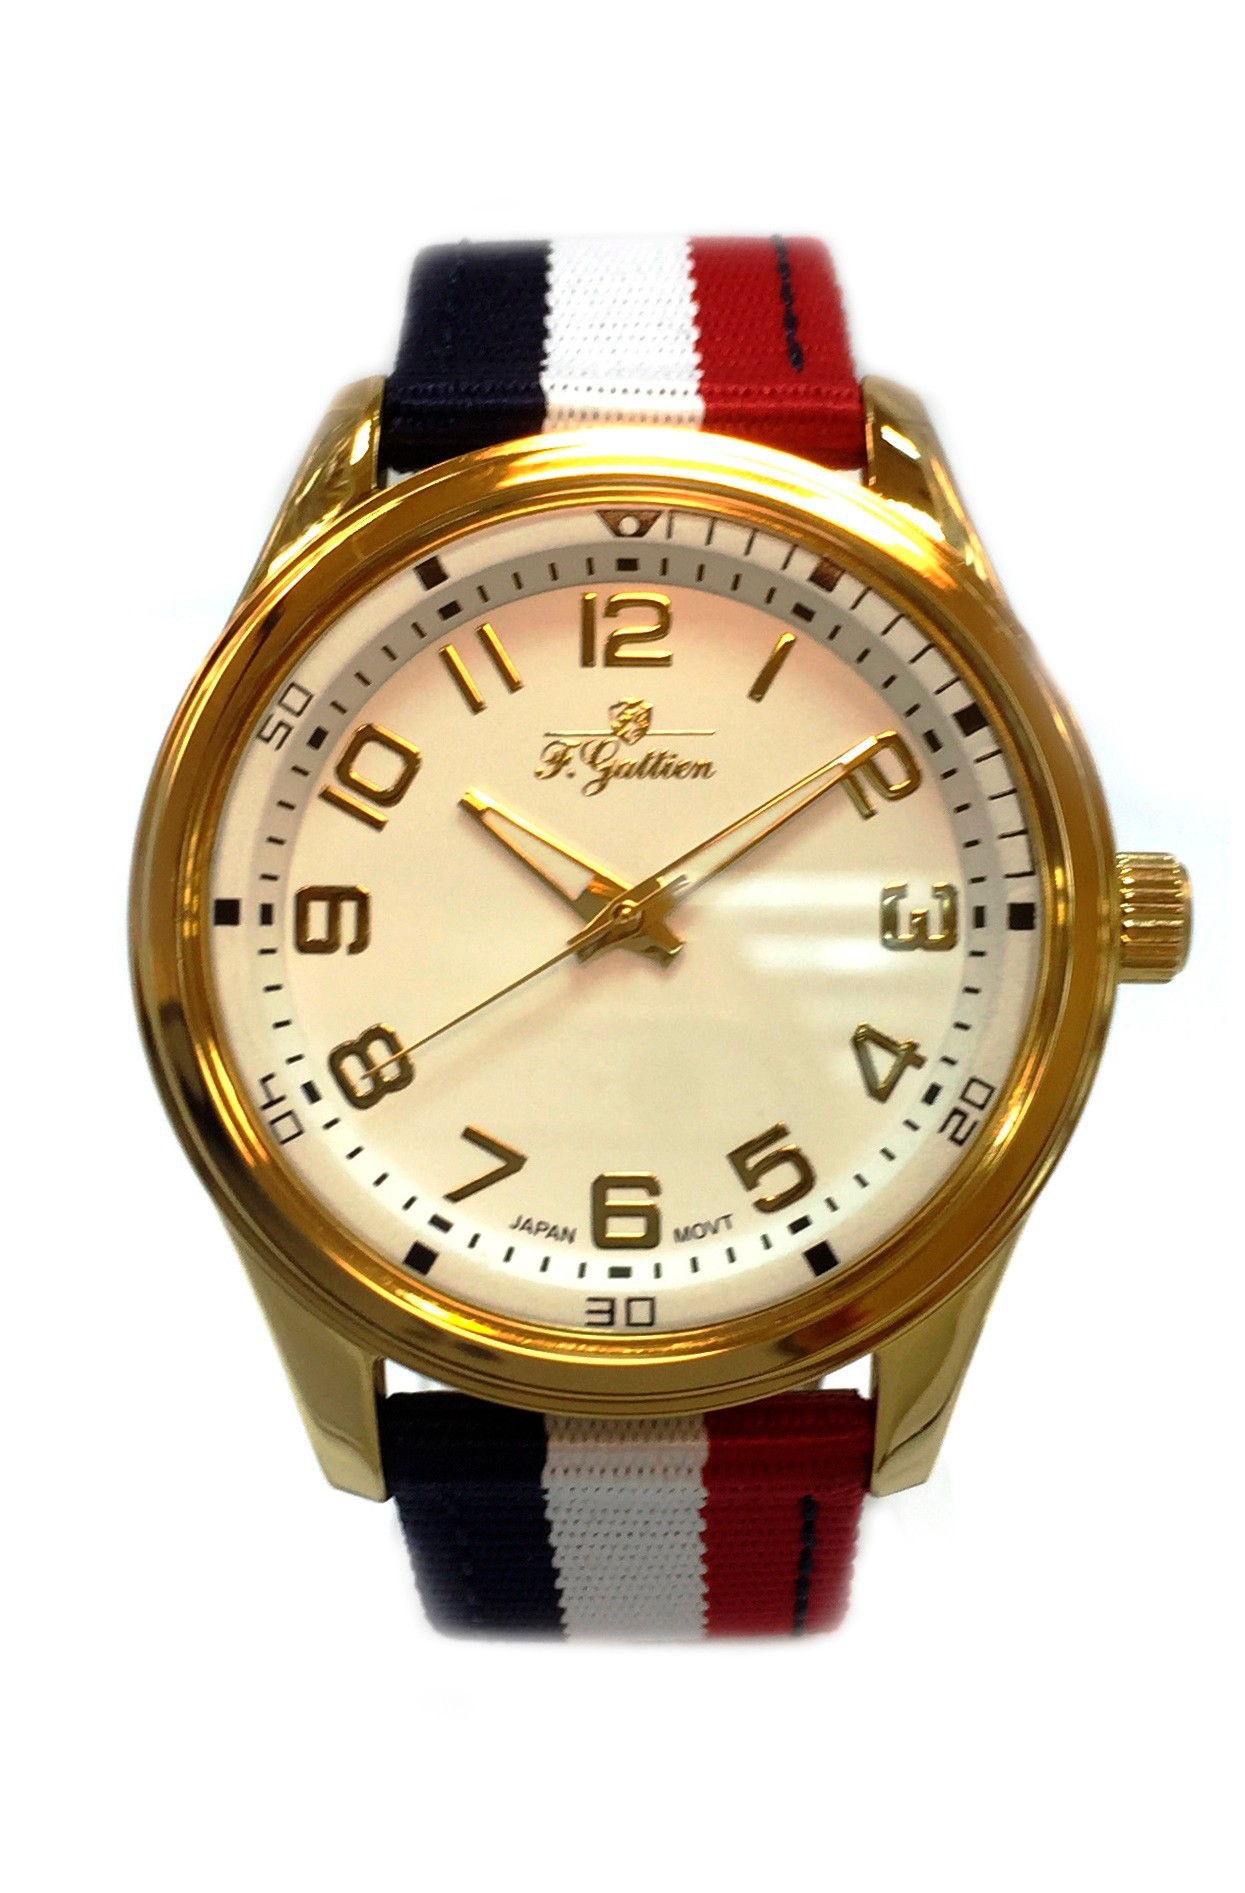 Наручные часы мужские F.Gattien 10875-111-06 черные/красные